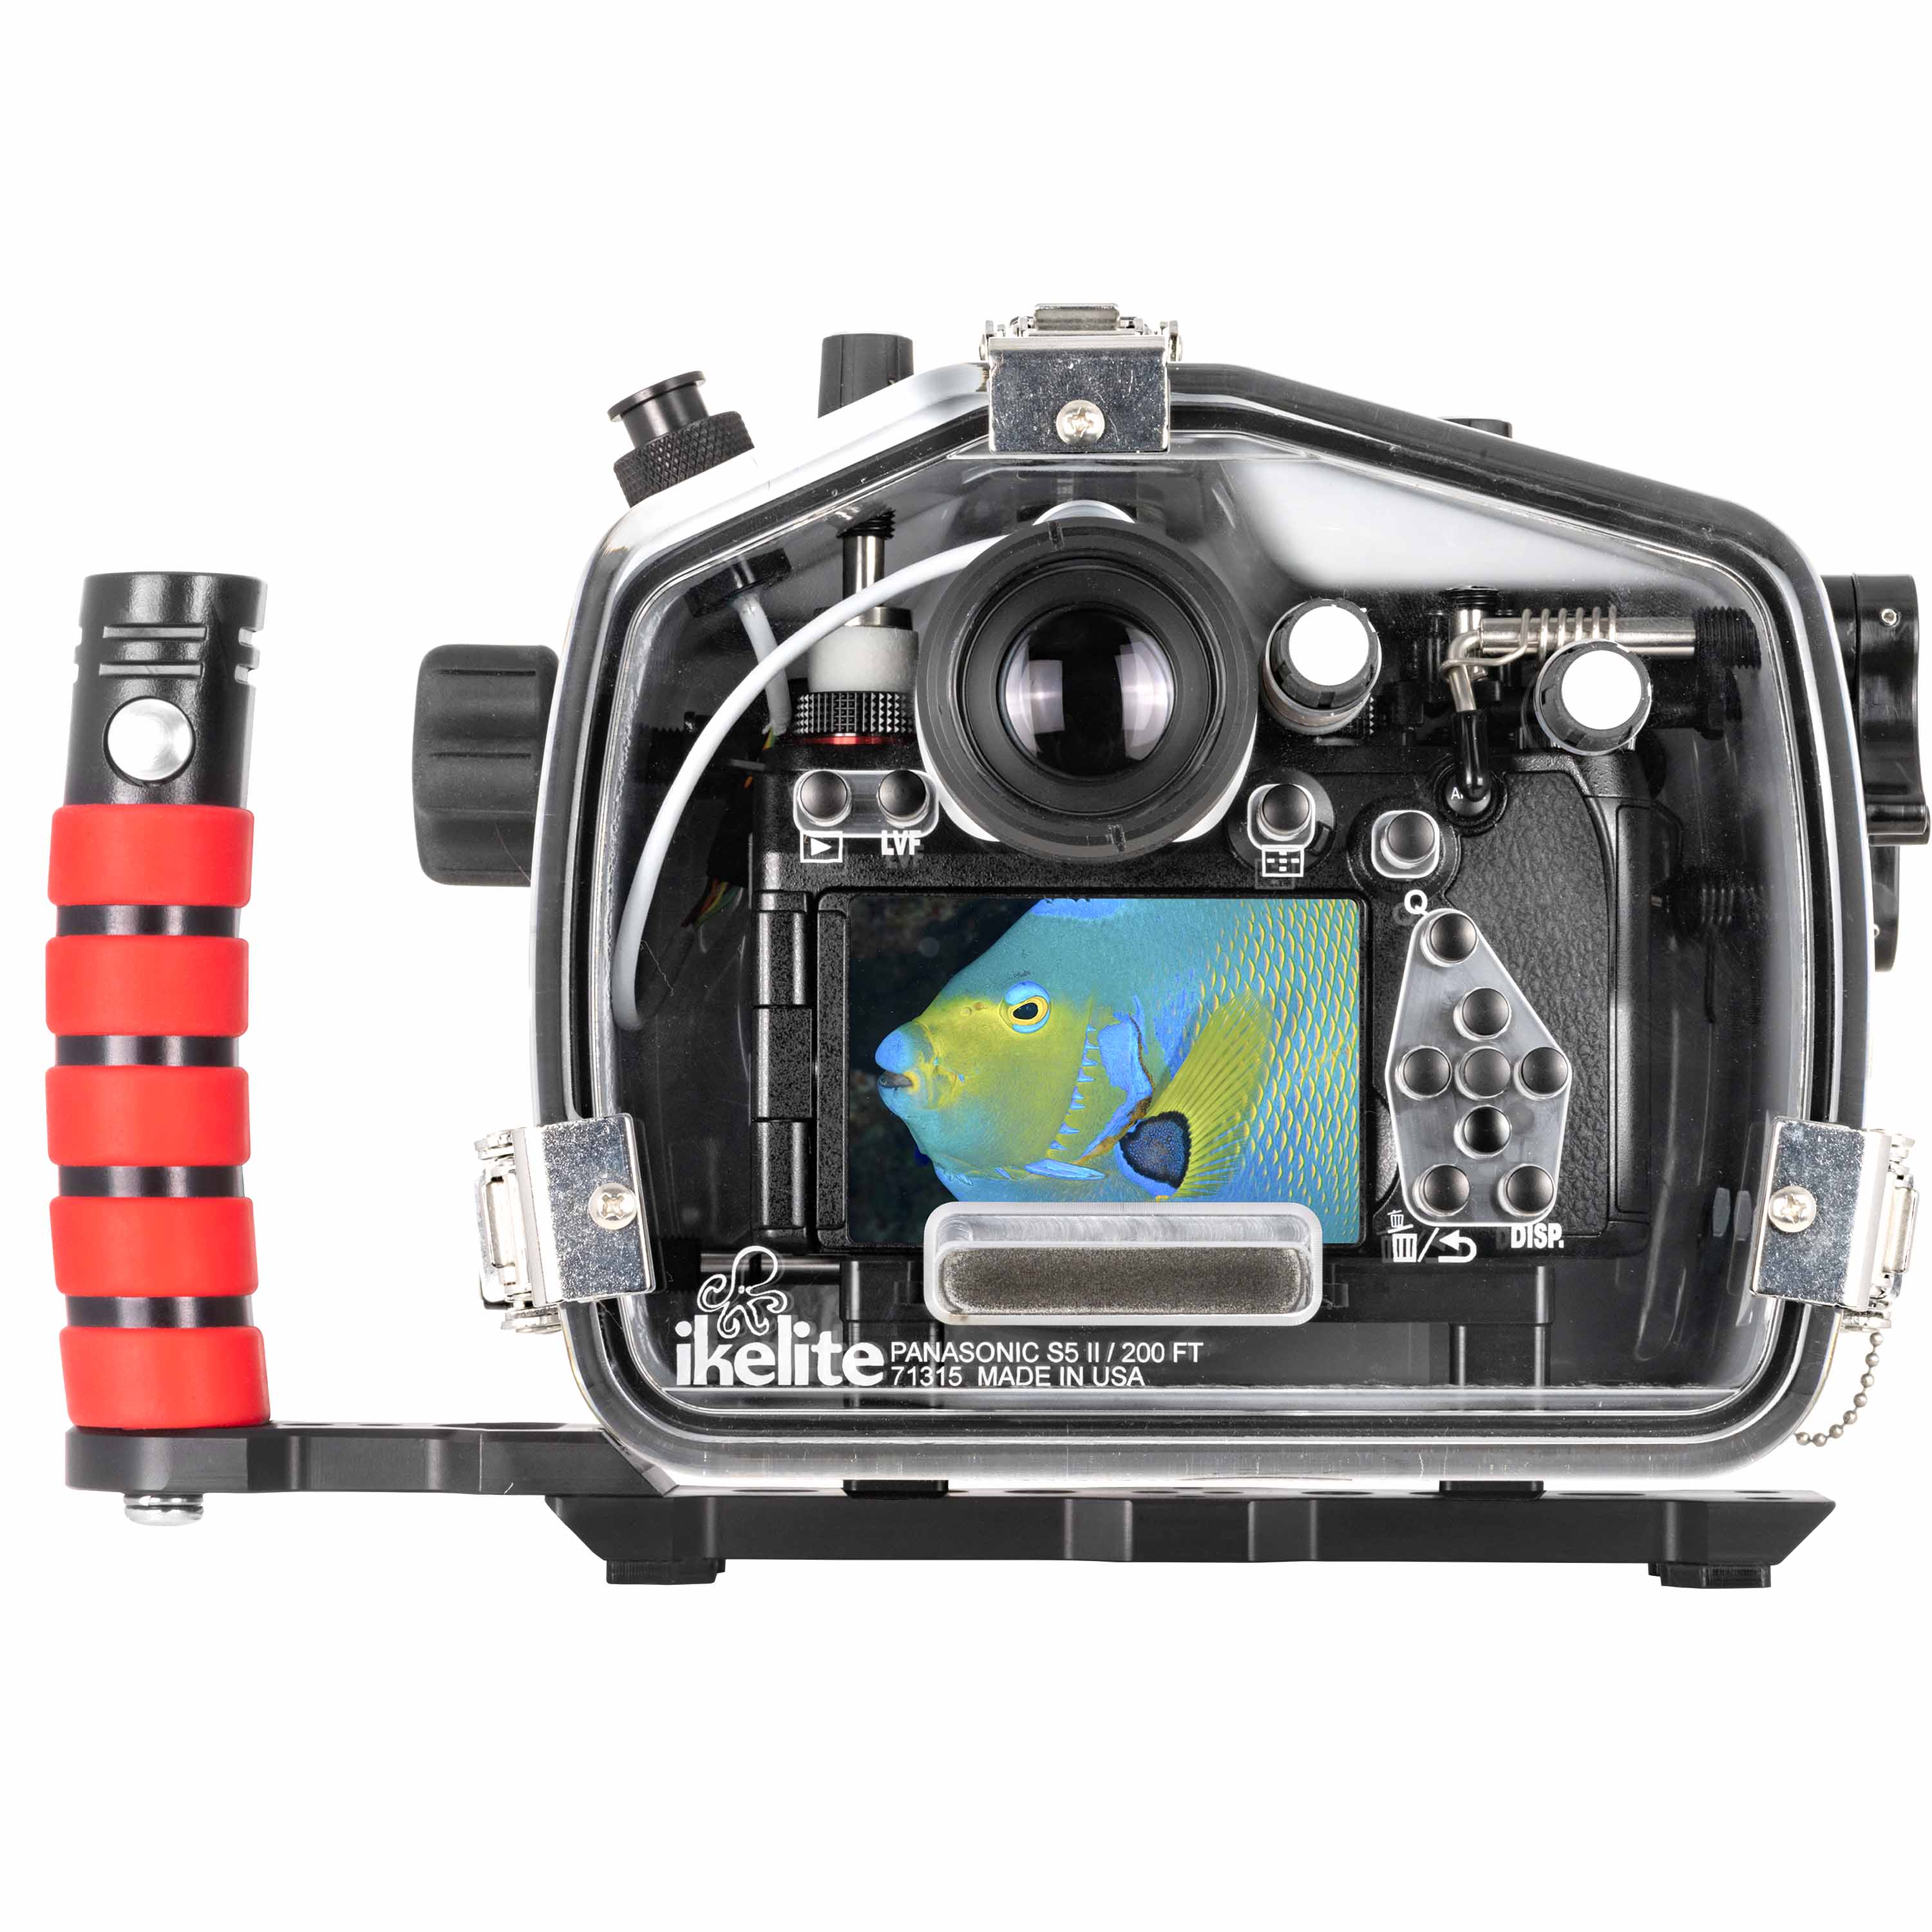 Ikelite 200DL Underwater Housing for Panasonic Lumix S5 II, S5 IIX Mirrorless Digital Cameras